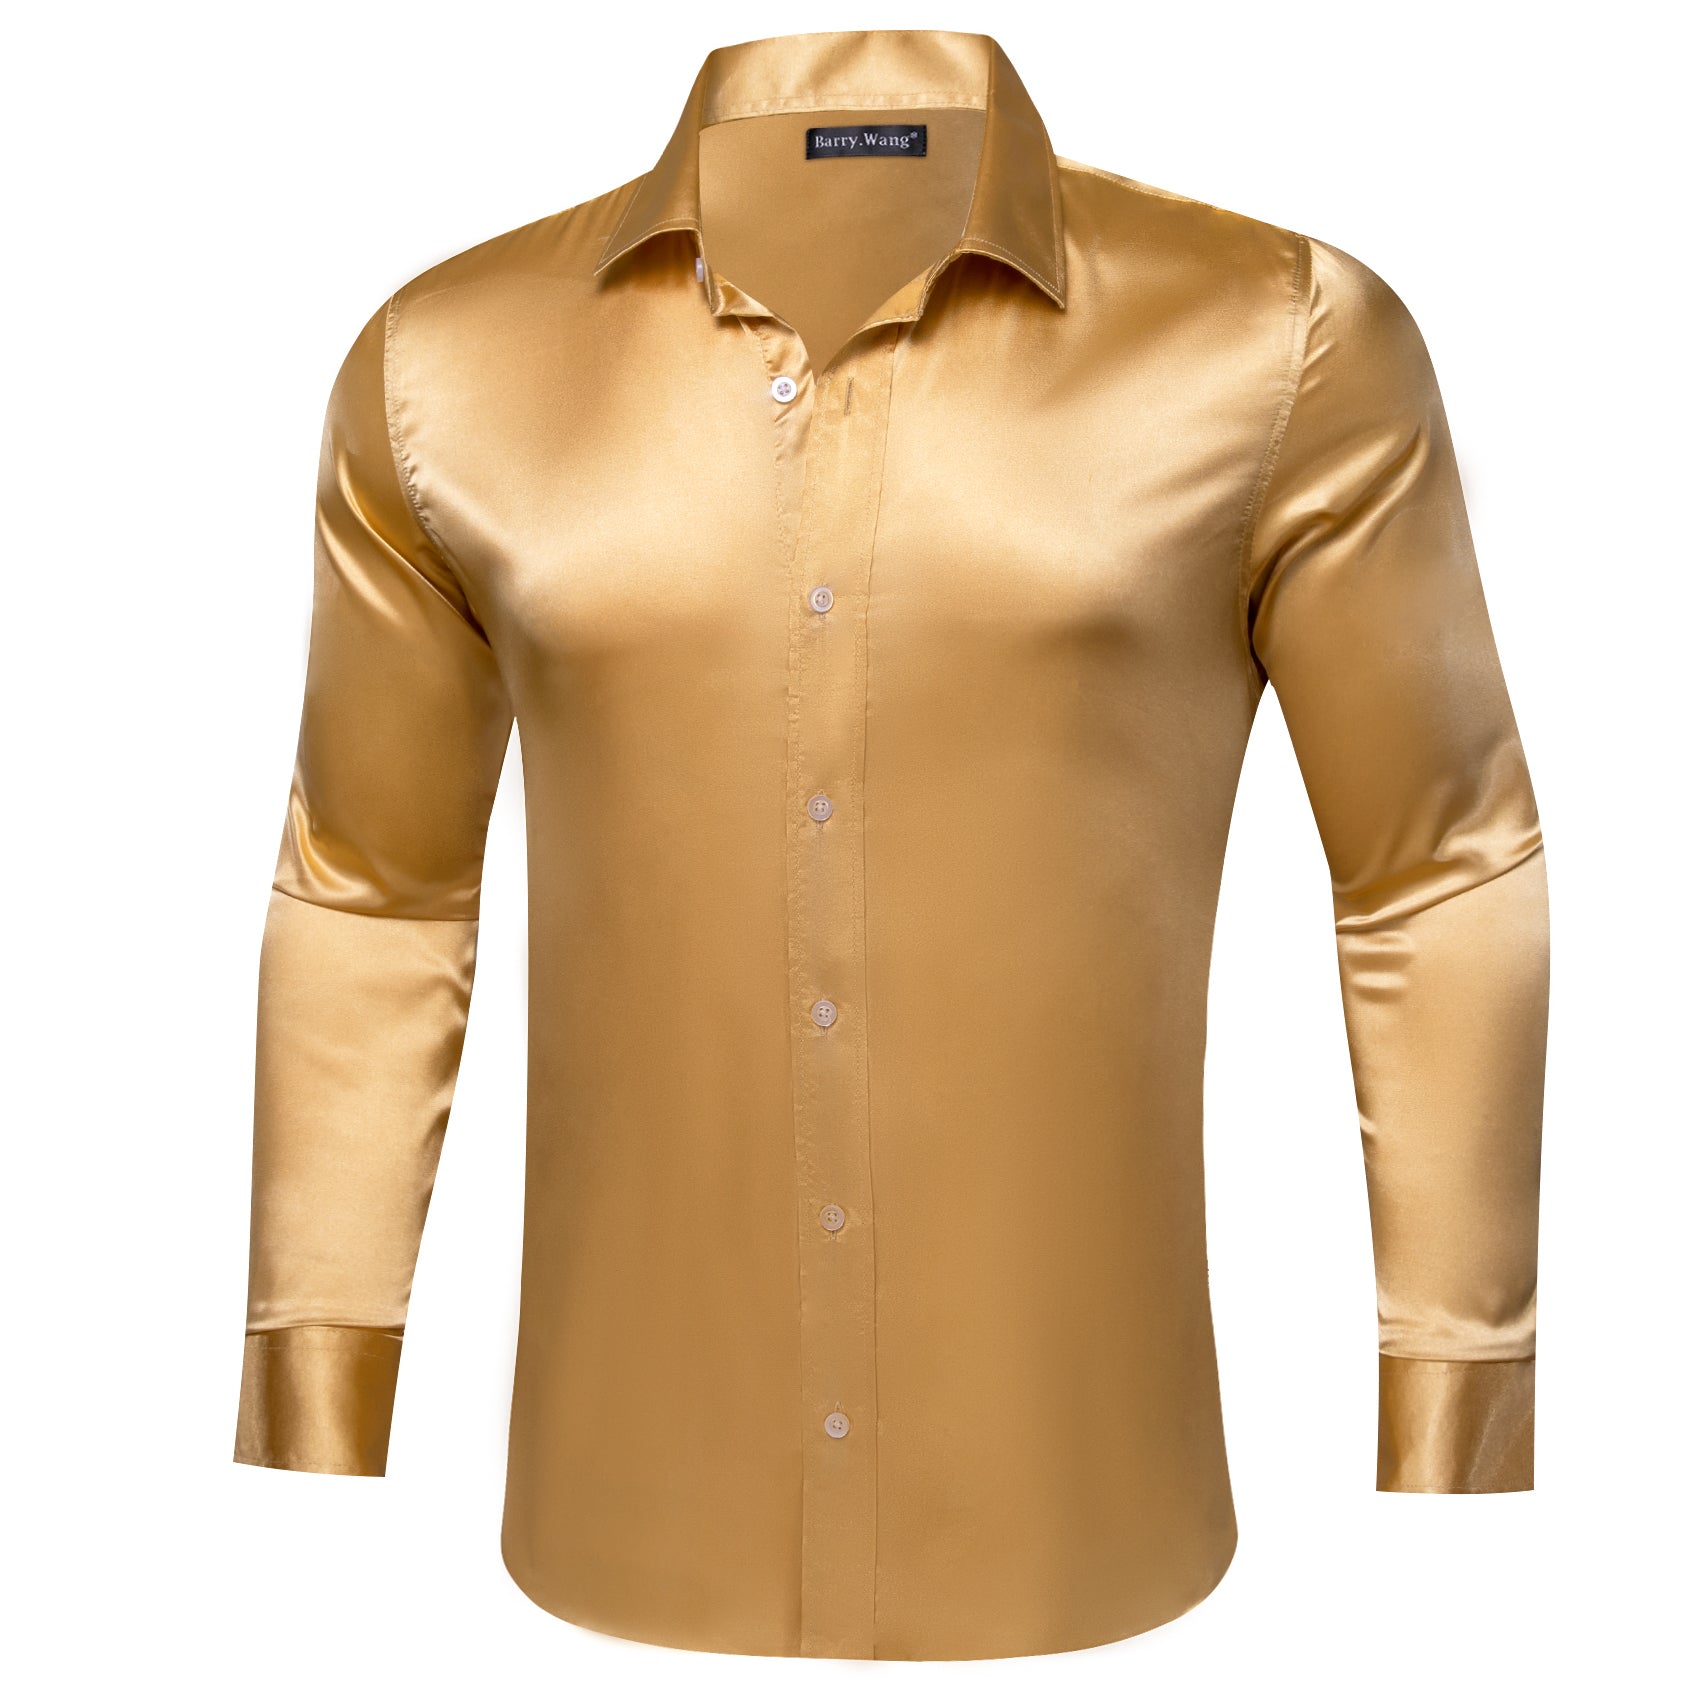 Barry.wang Gold Solid Silk Shirt